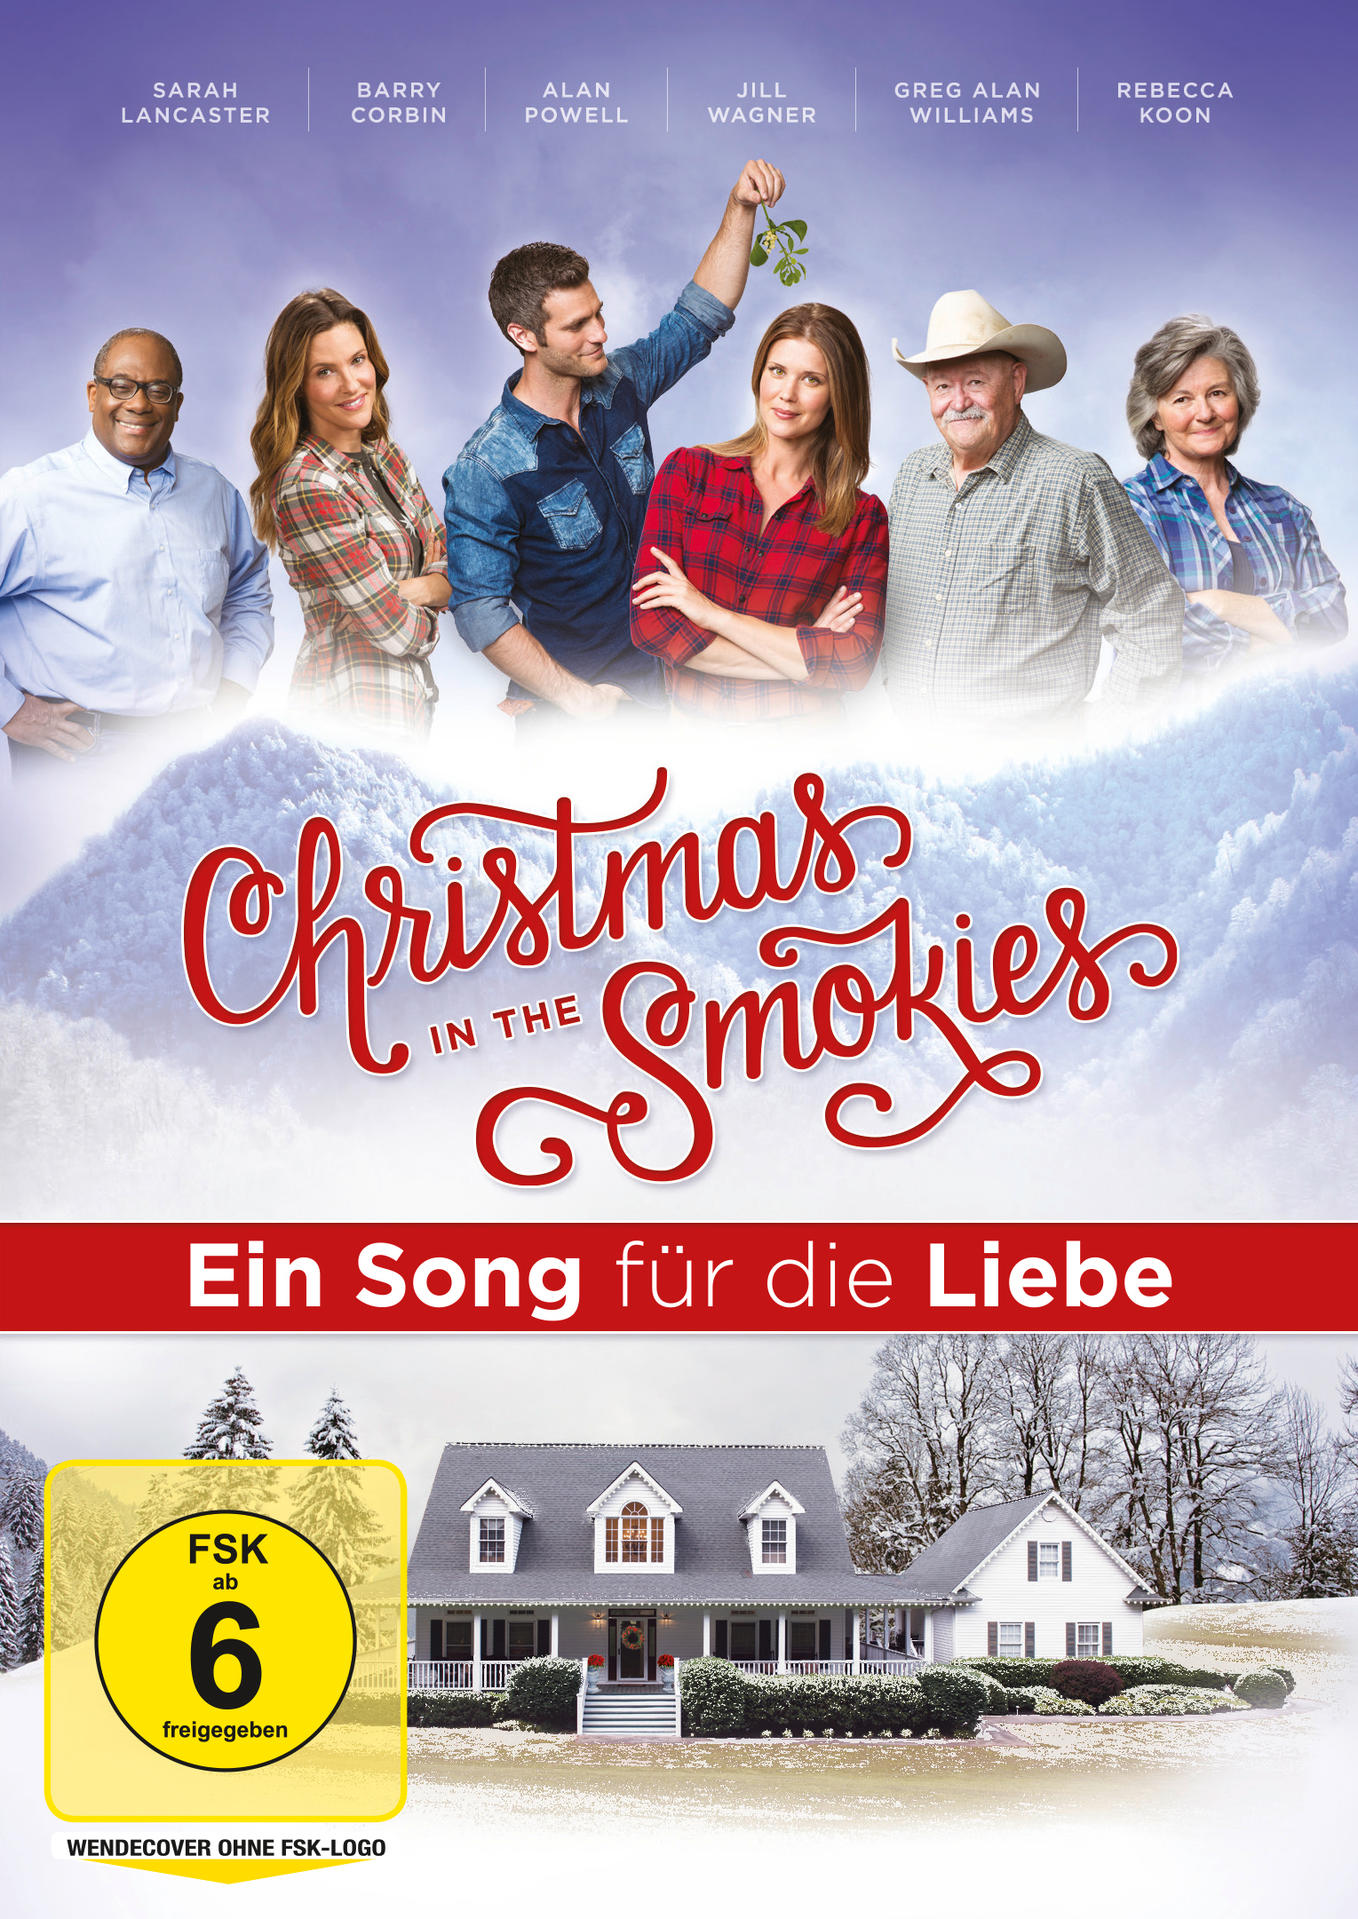 In Christmas Smokies Song DVD die - Ein für Liebe The